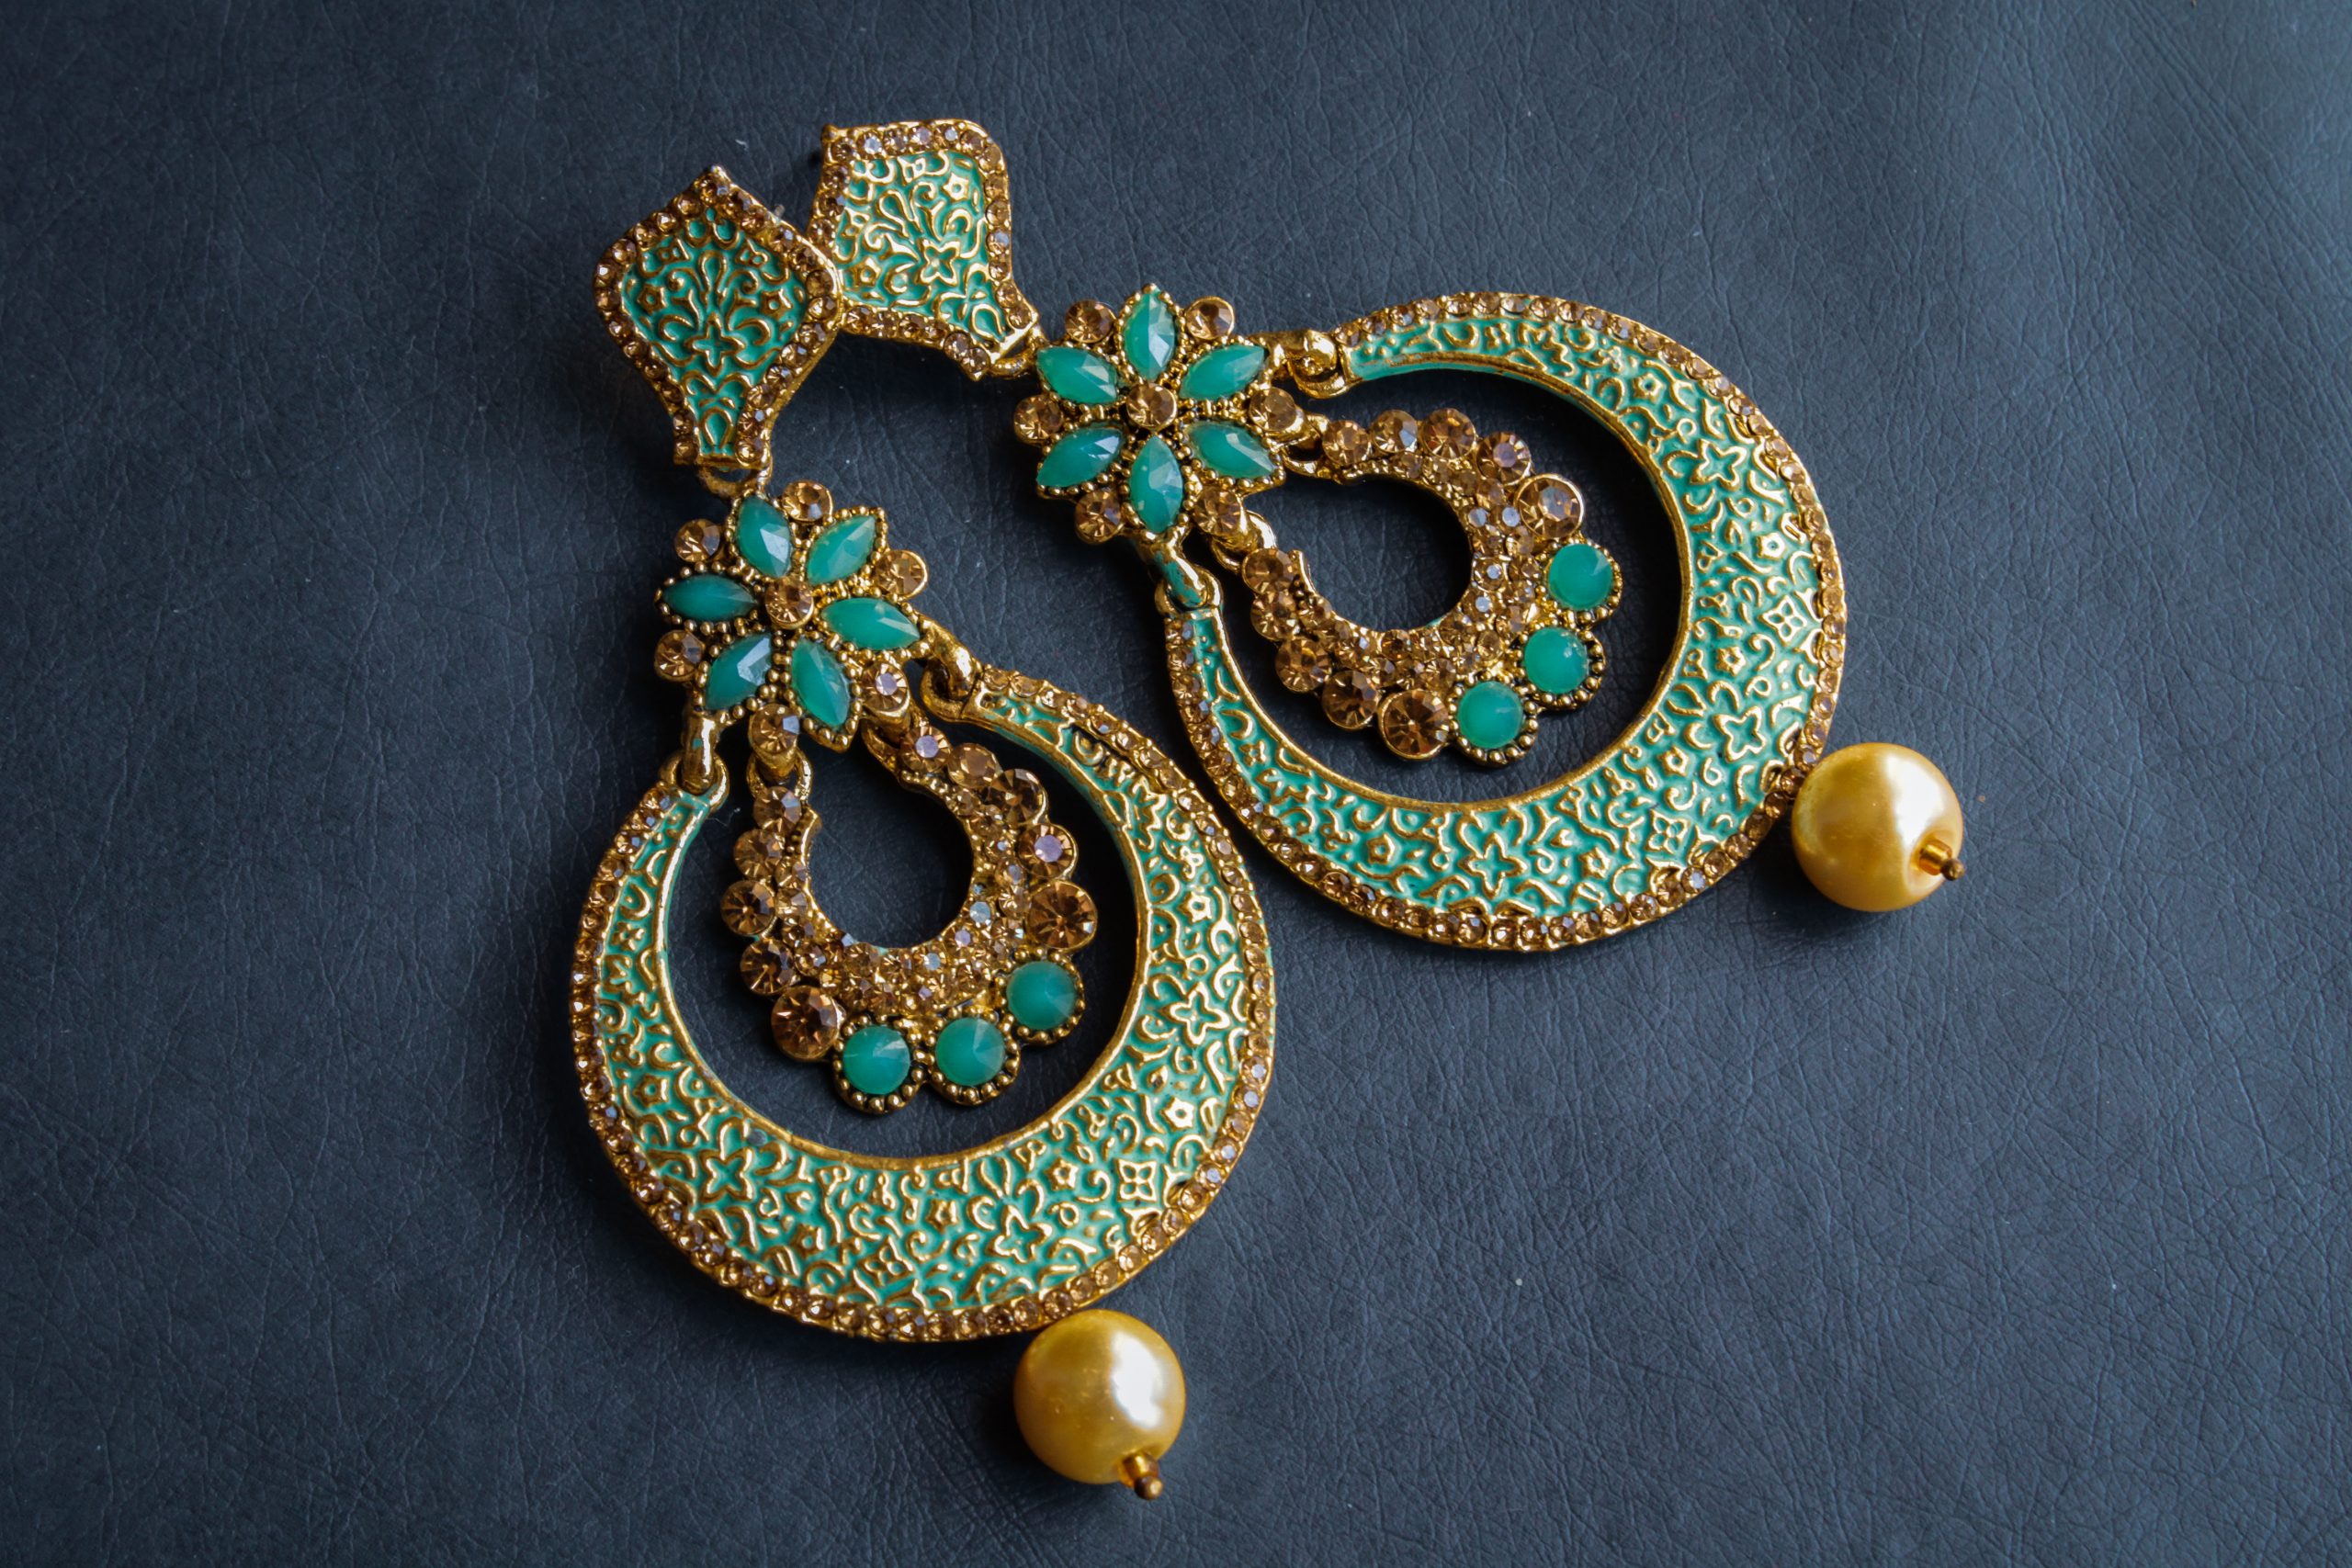 A pair of earrings